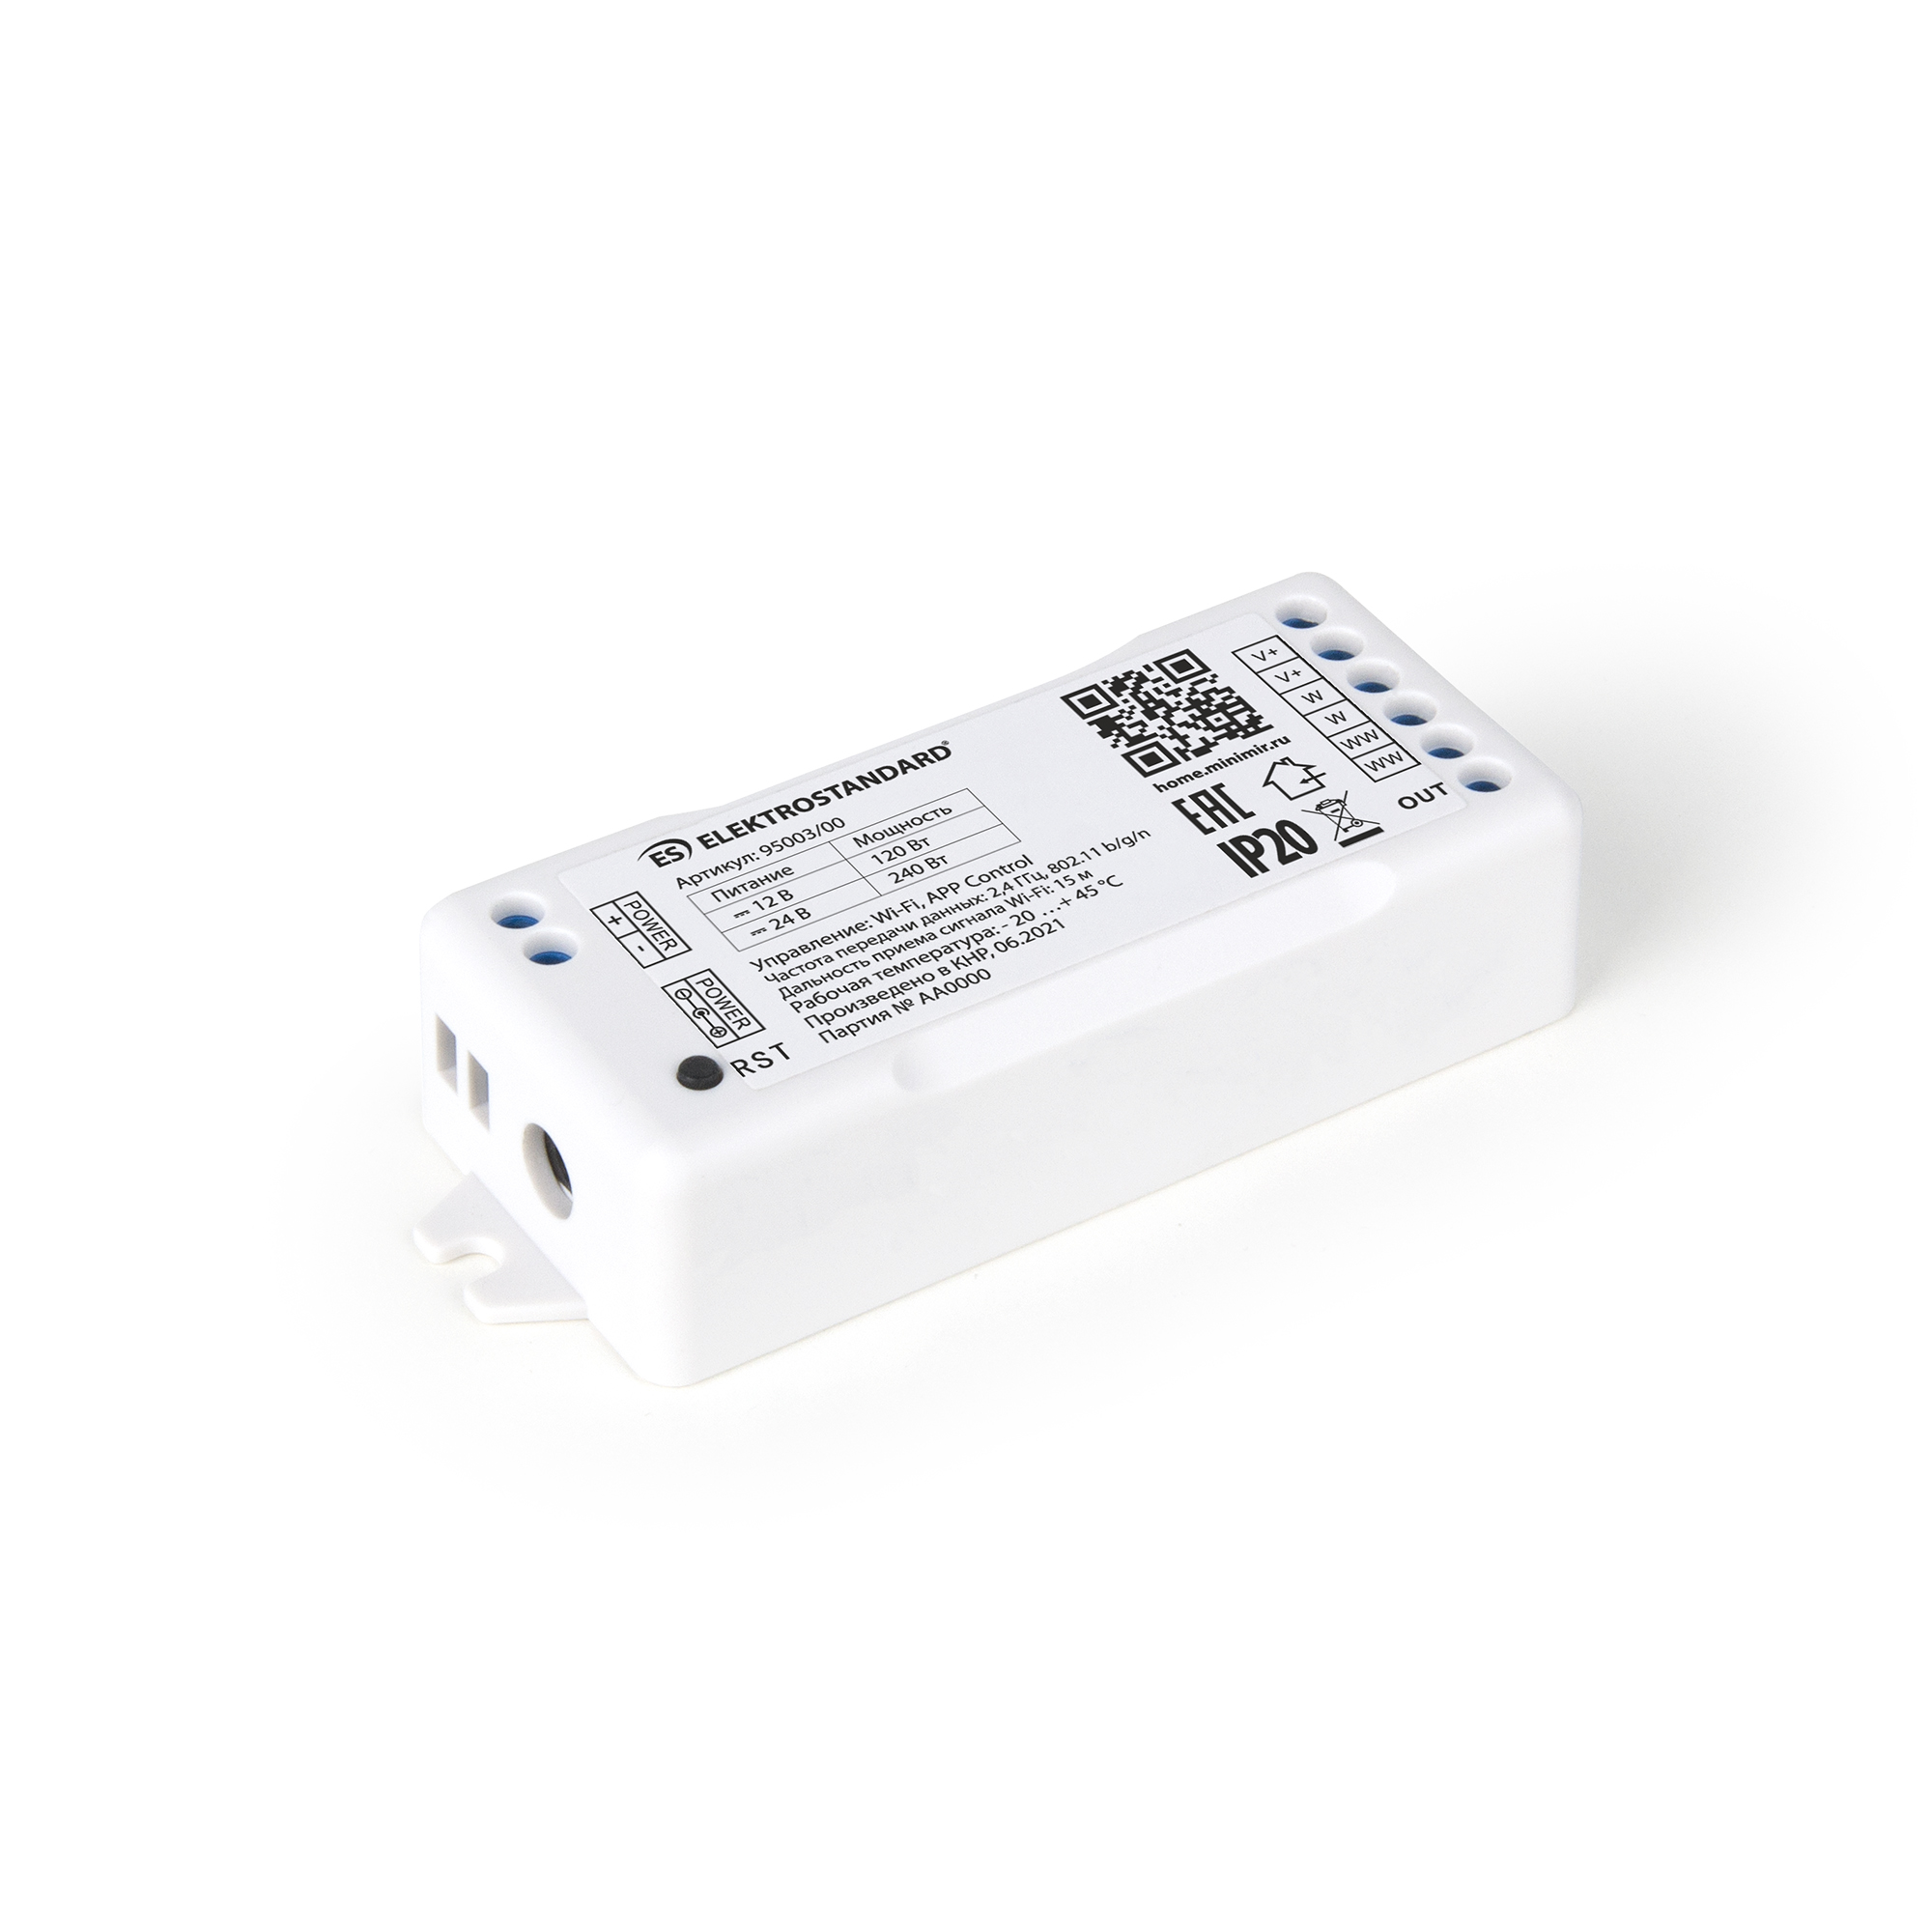 Умный контроллер для светодиодных лент MIX 12-24V Elektrostandard 95003/00 Minimir Home умный контроллер для светодиодных лент elektrostandard